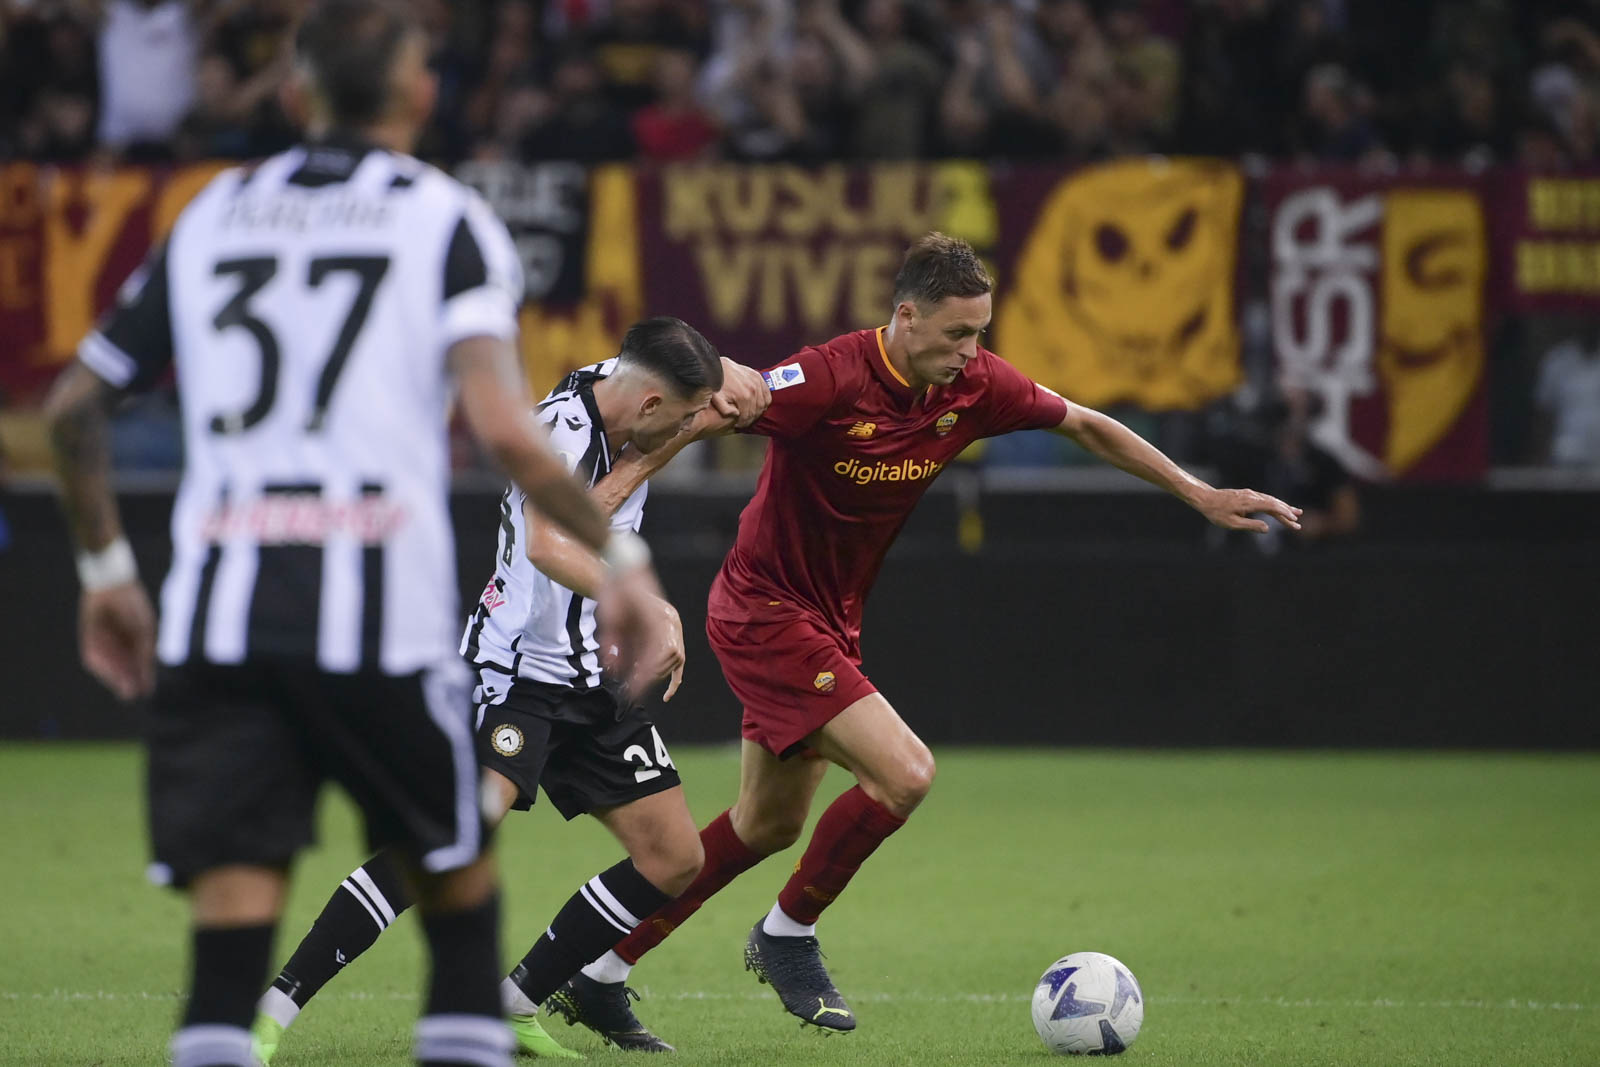 Jose Mourinho Tersakiti Tanpa Ampun, Udinese Gulung 4 gol ke AS Roma